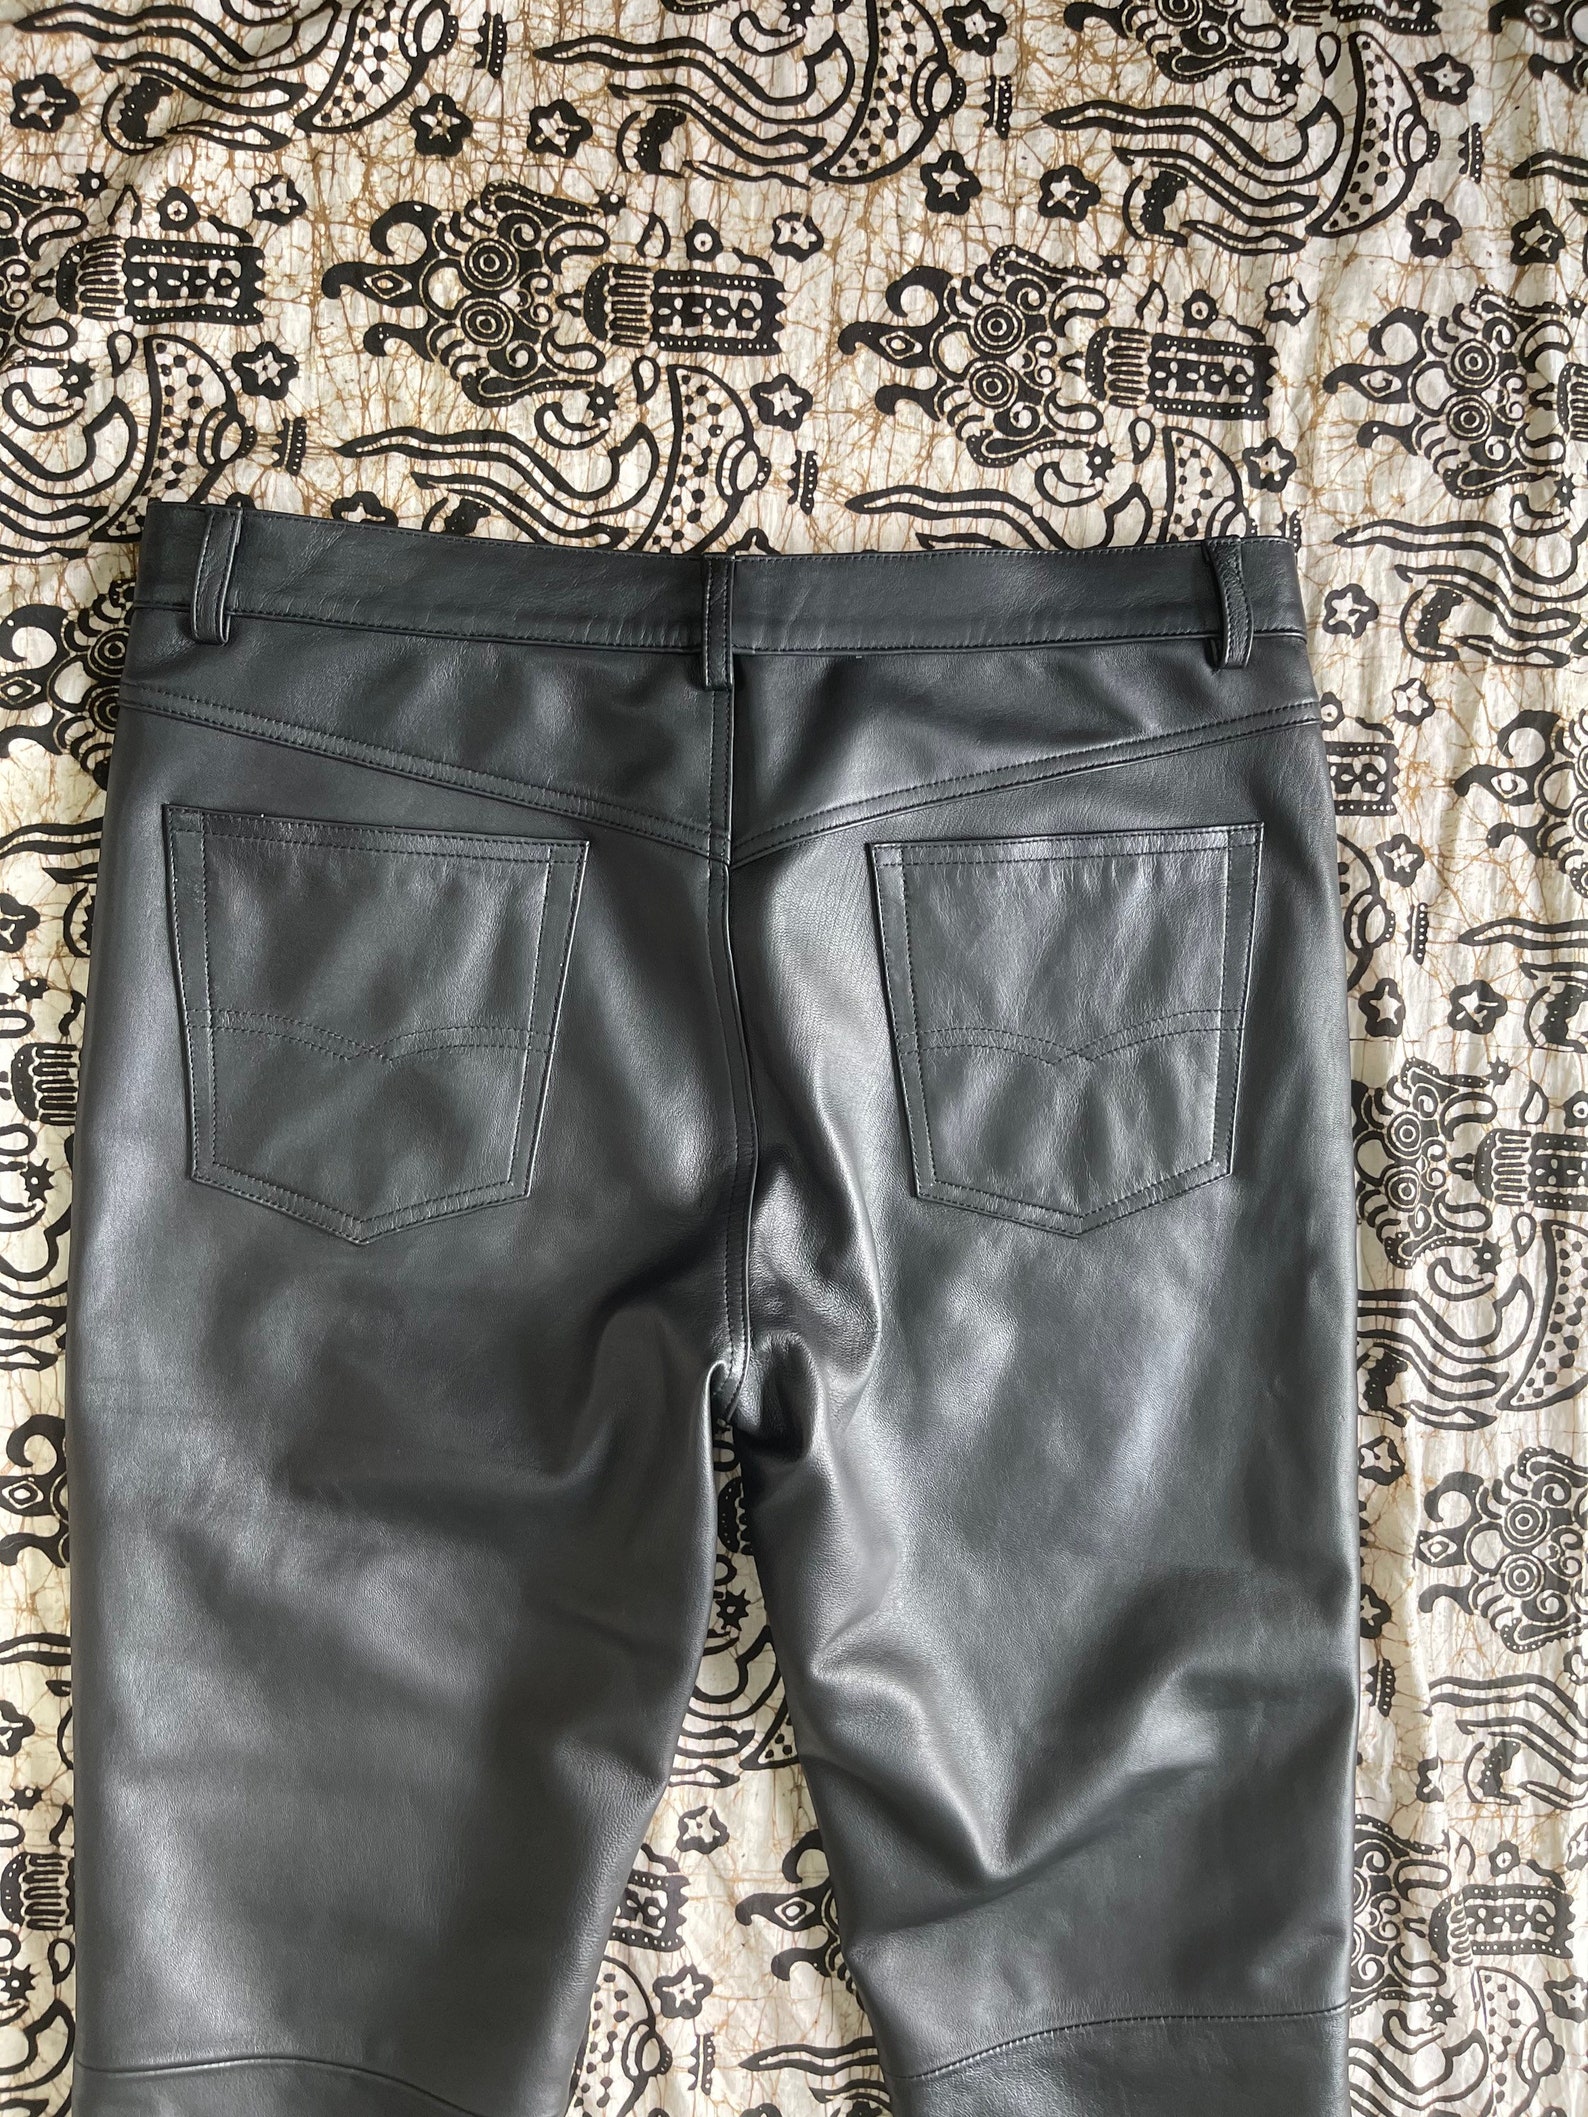 Python Leather Pants Snakeskin Pants Black Leather Pants | Etsy